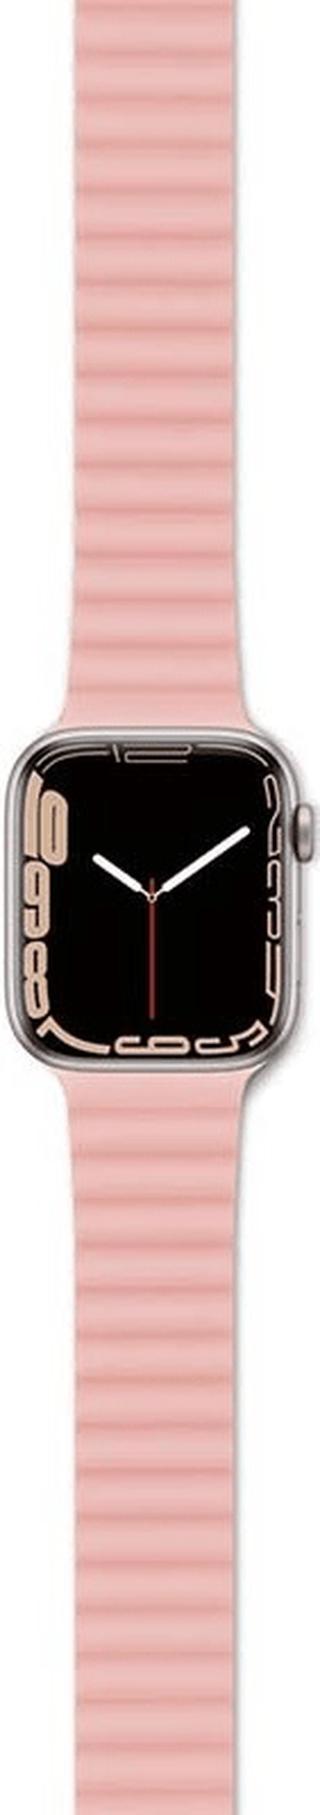 EPICO magnetický pásek pro Apple Watch 38/40/41mm – ŠEDÁ/růžová, 63318101900002